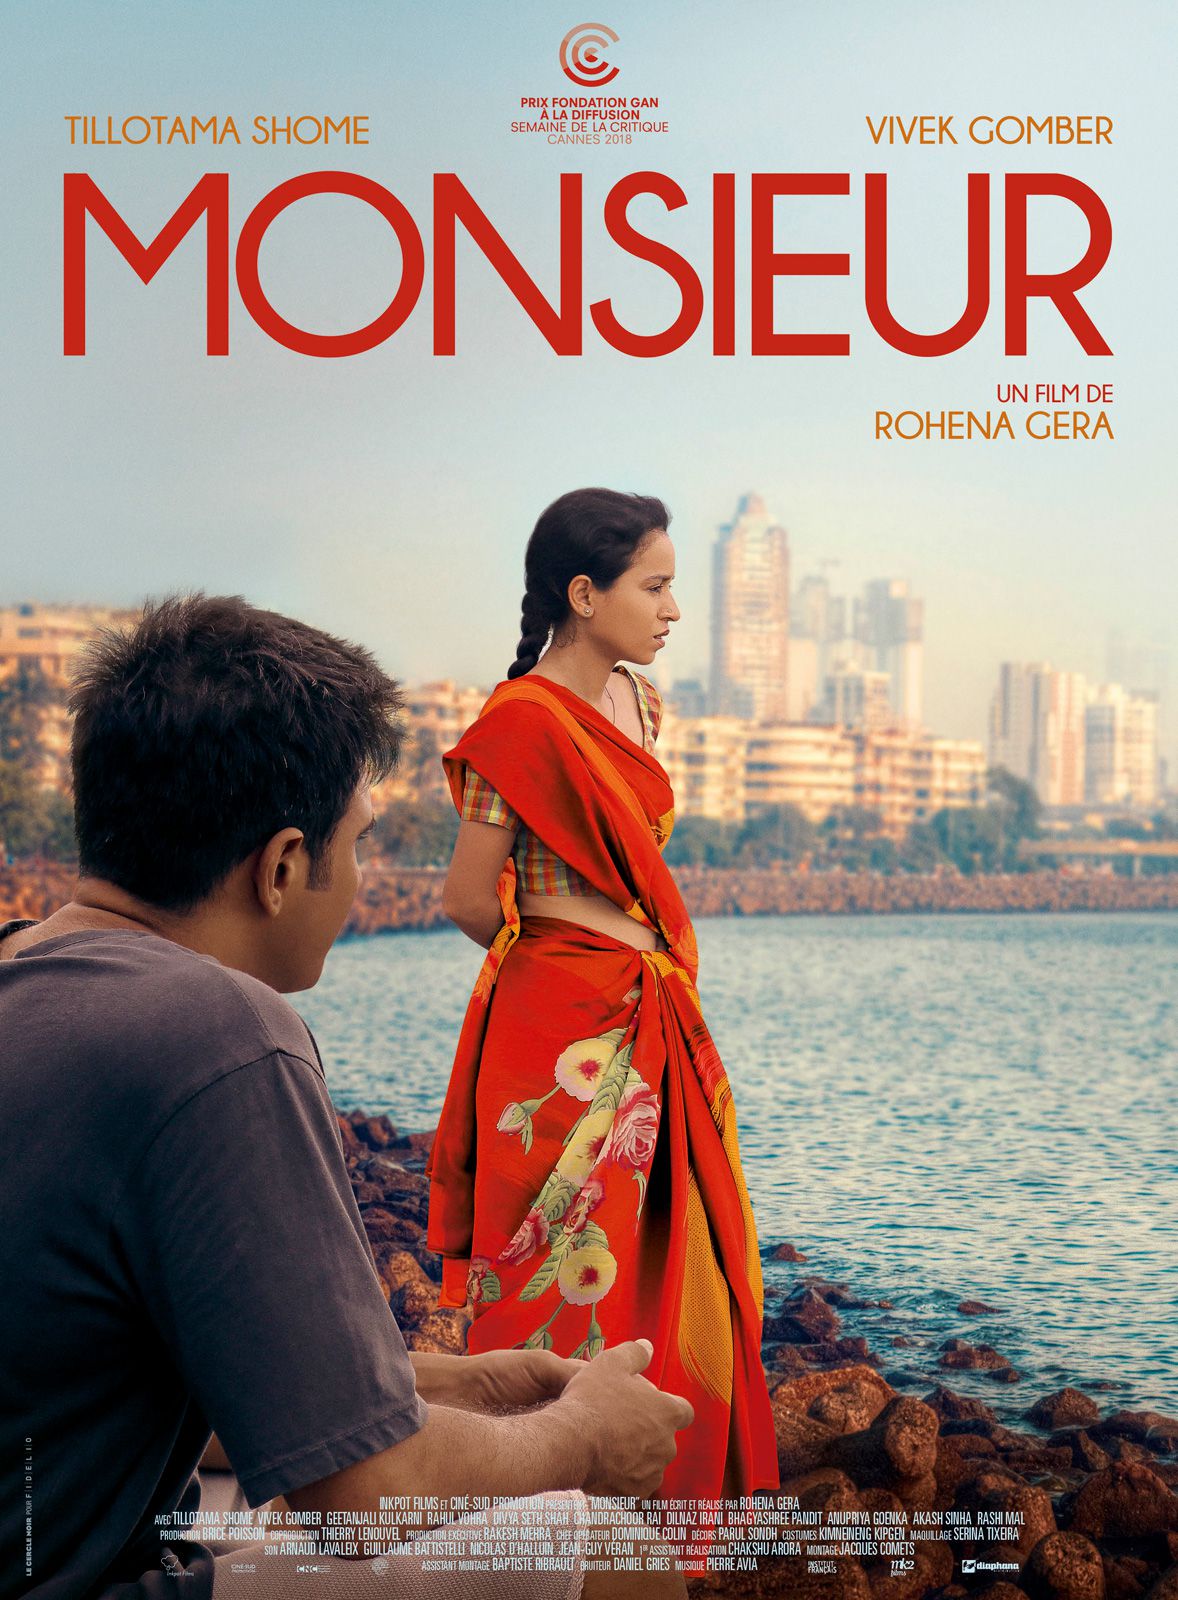 Monsieur - Film (2018) streaming VF gratuit complet